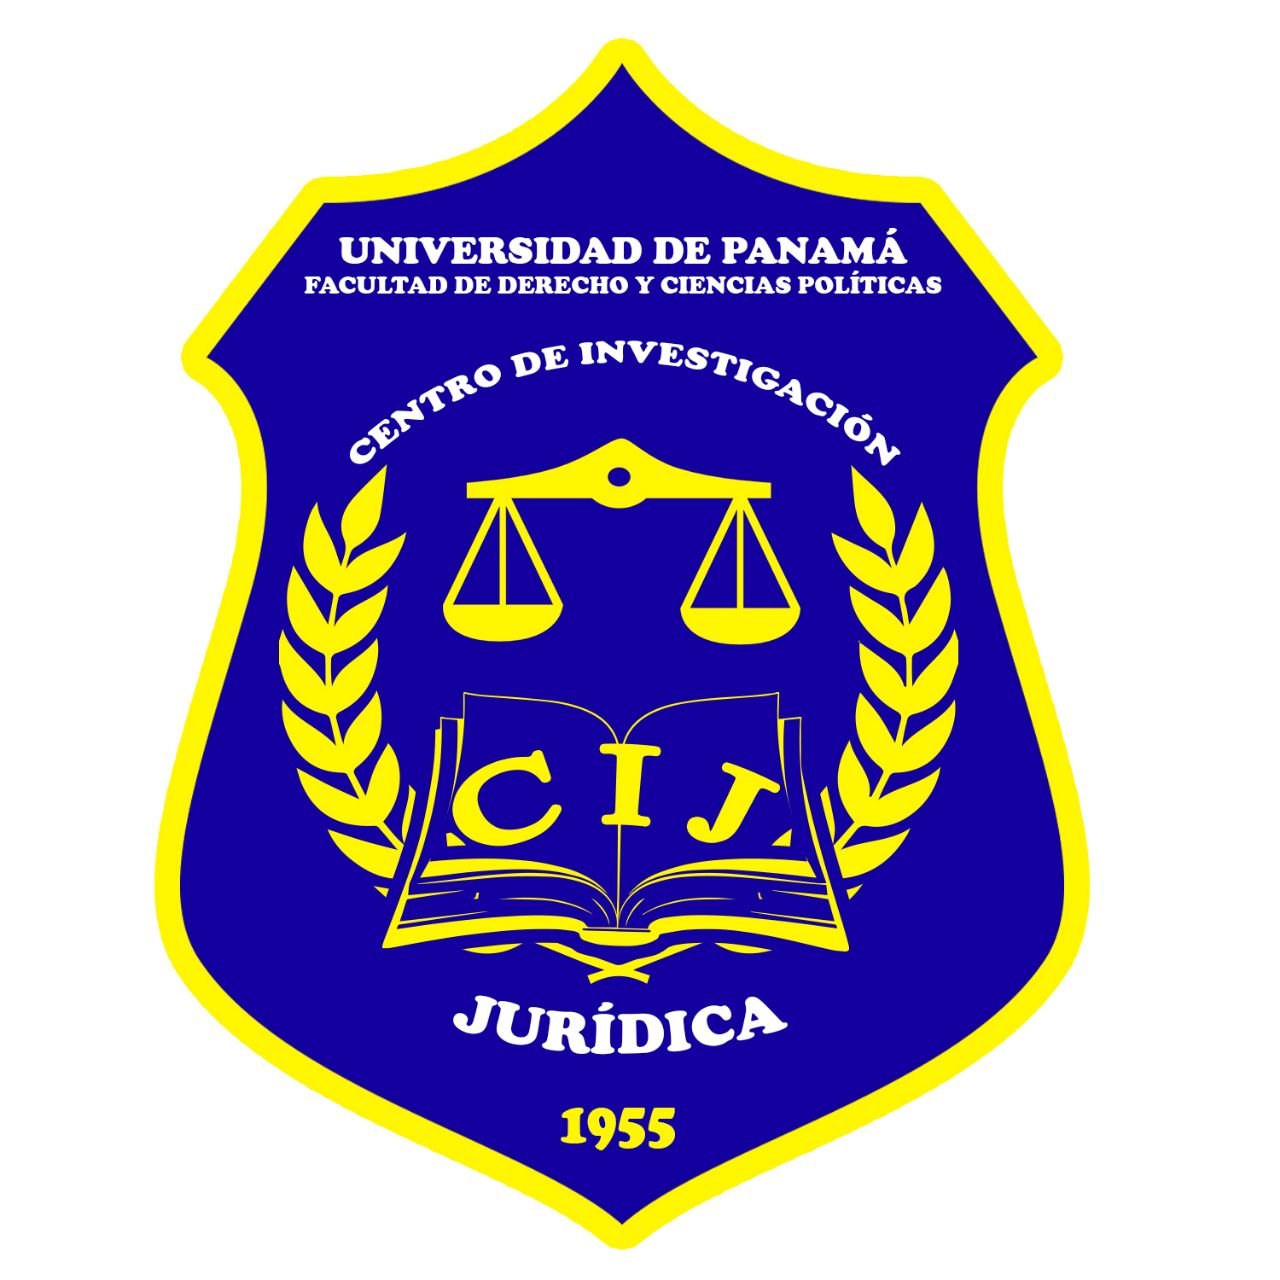 Centro de Investigación pionero de la Universidad de Panamá, dedicado al estudio científico de la legislación, jurisprudencia, doctrina jurídica, entre otros.